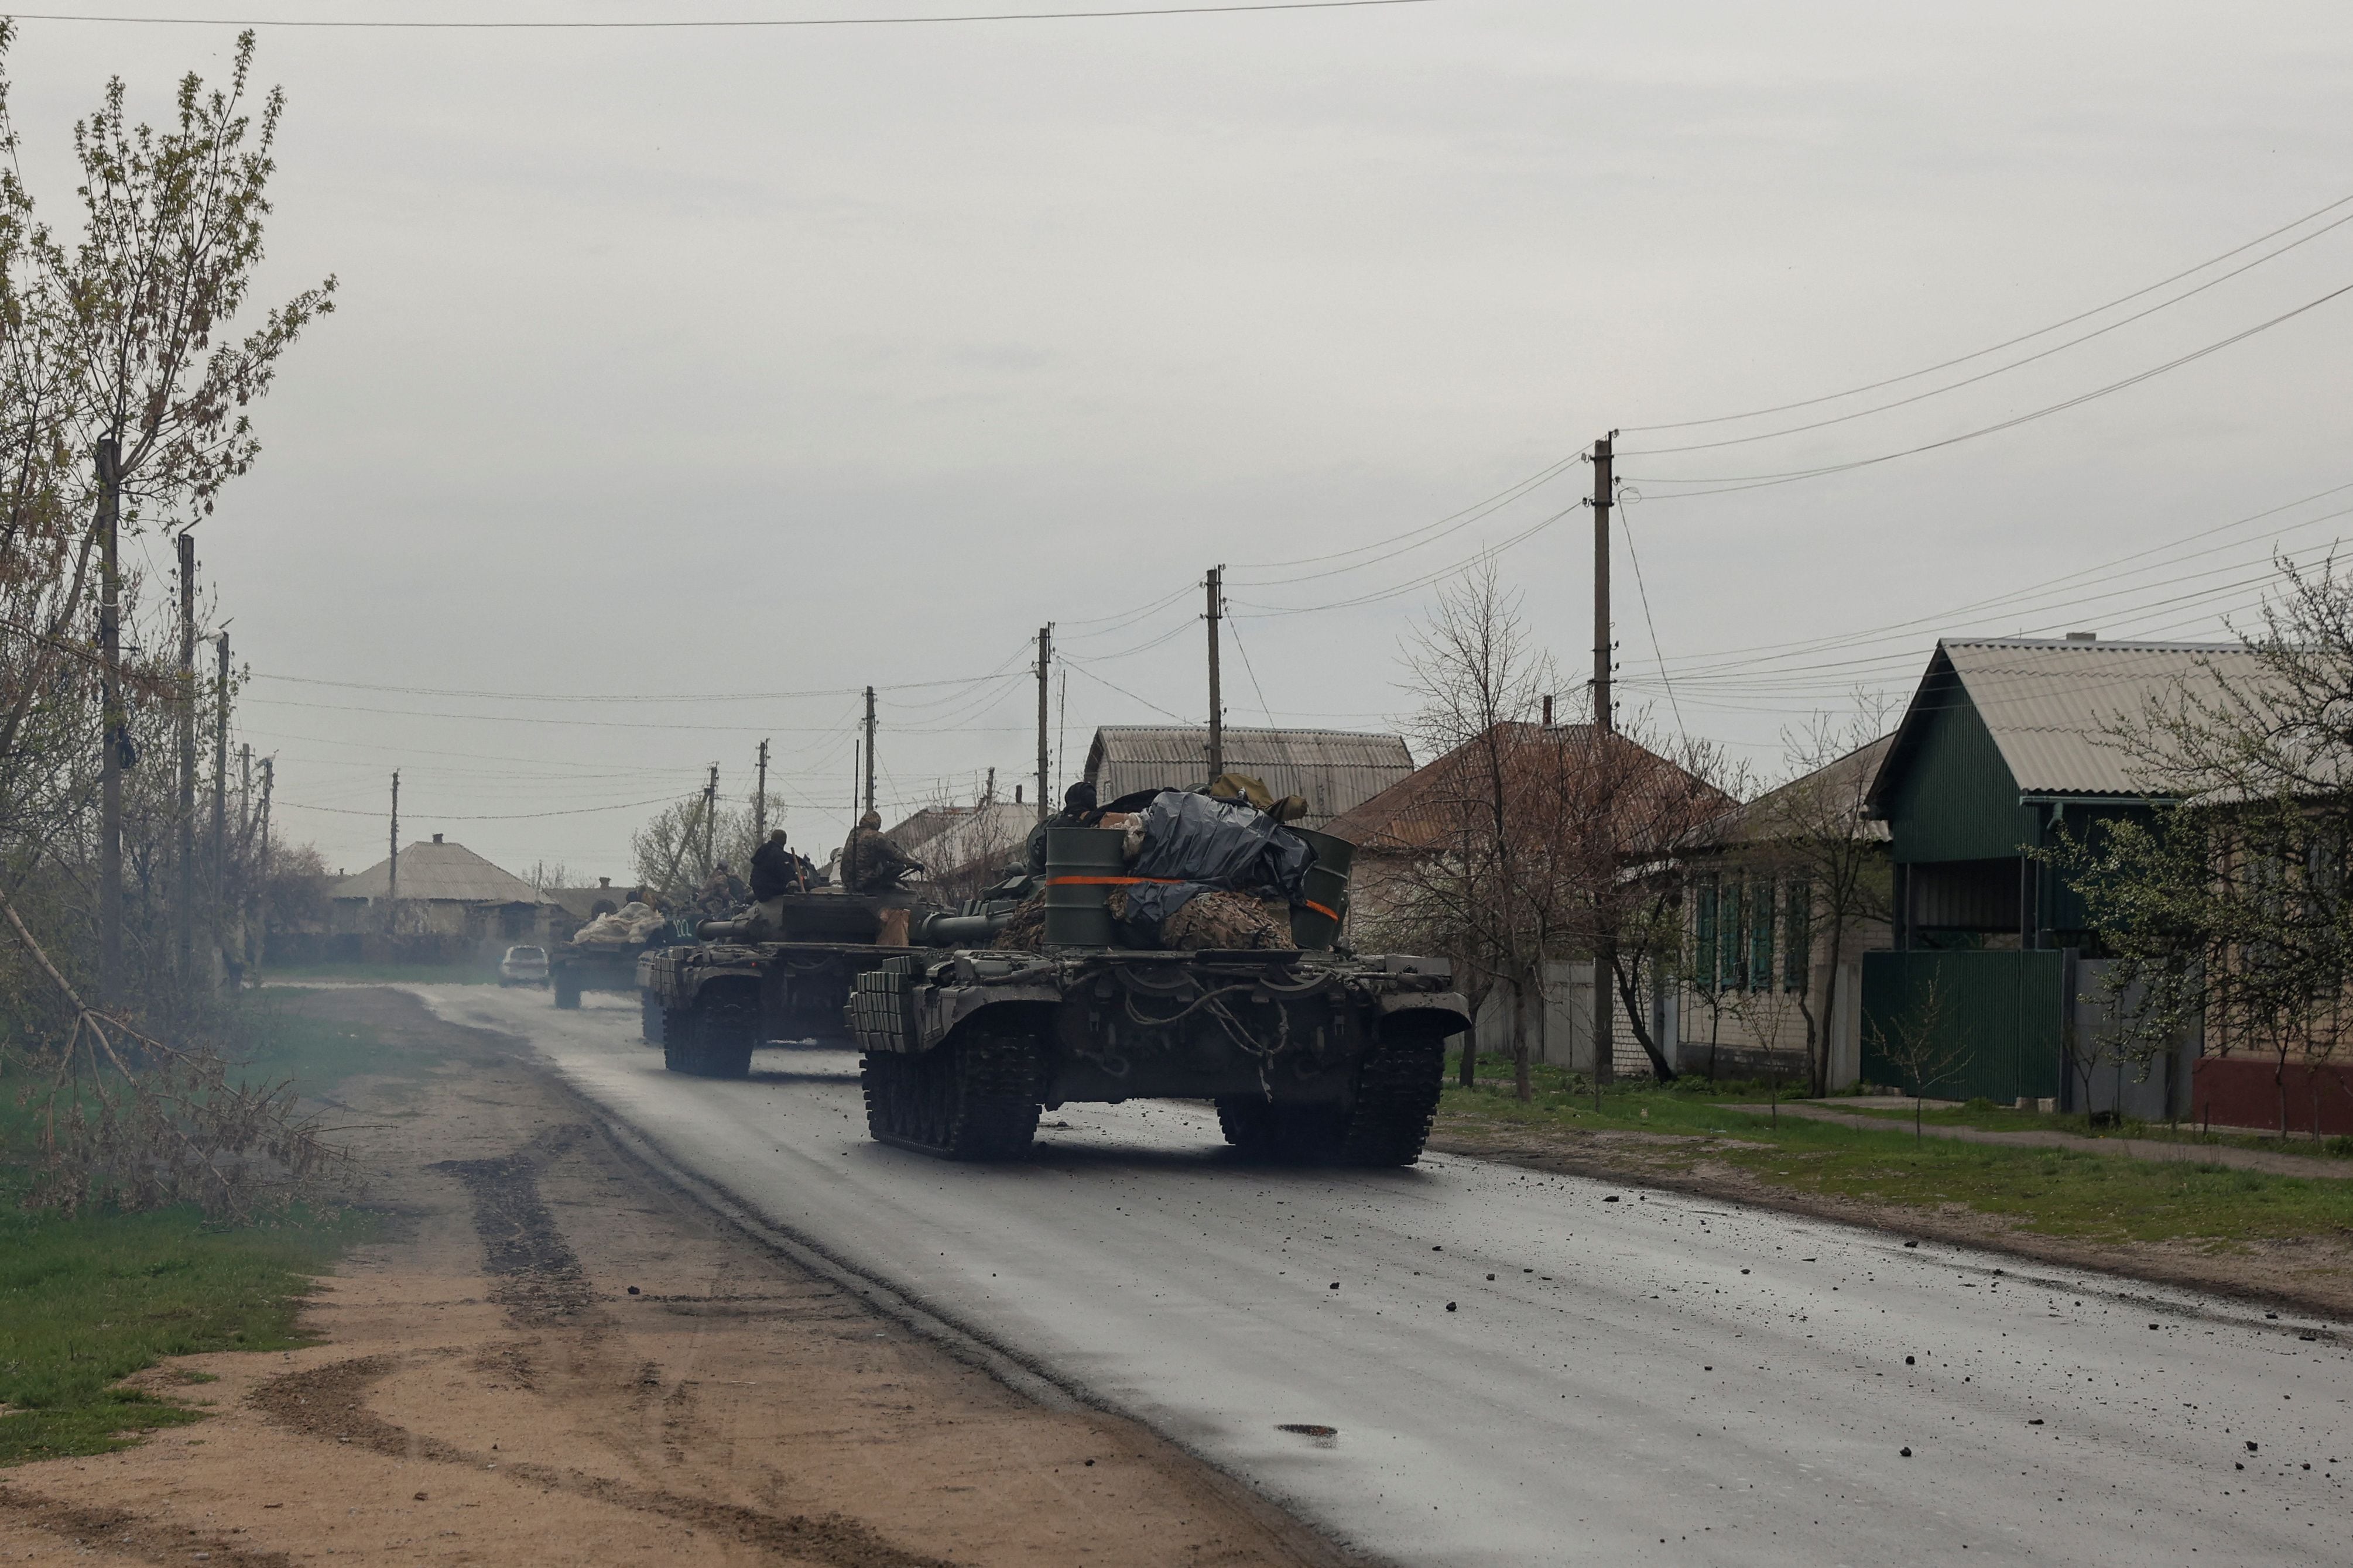 Tanques de las Fuerzas Armadas de Ucrania recorren una calle de un pueblo, mientras continúa el ataque de Rusia a Ucrania, en la región de Donetsk, Ucrania 18 de abril de 2022. REUTERS/Serhii Nuzhnenko